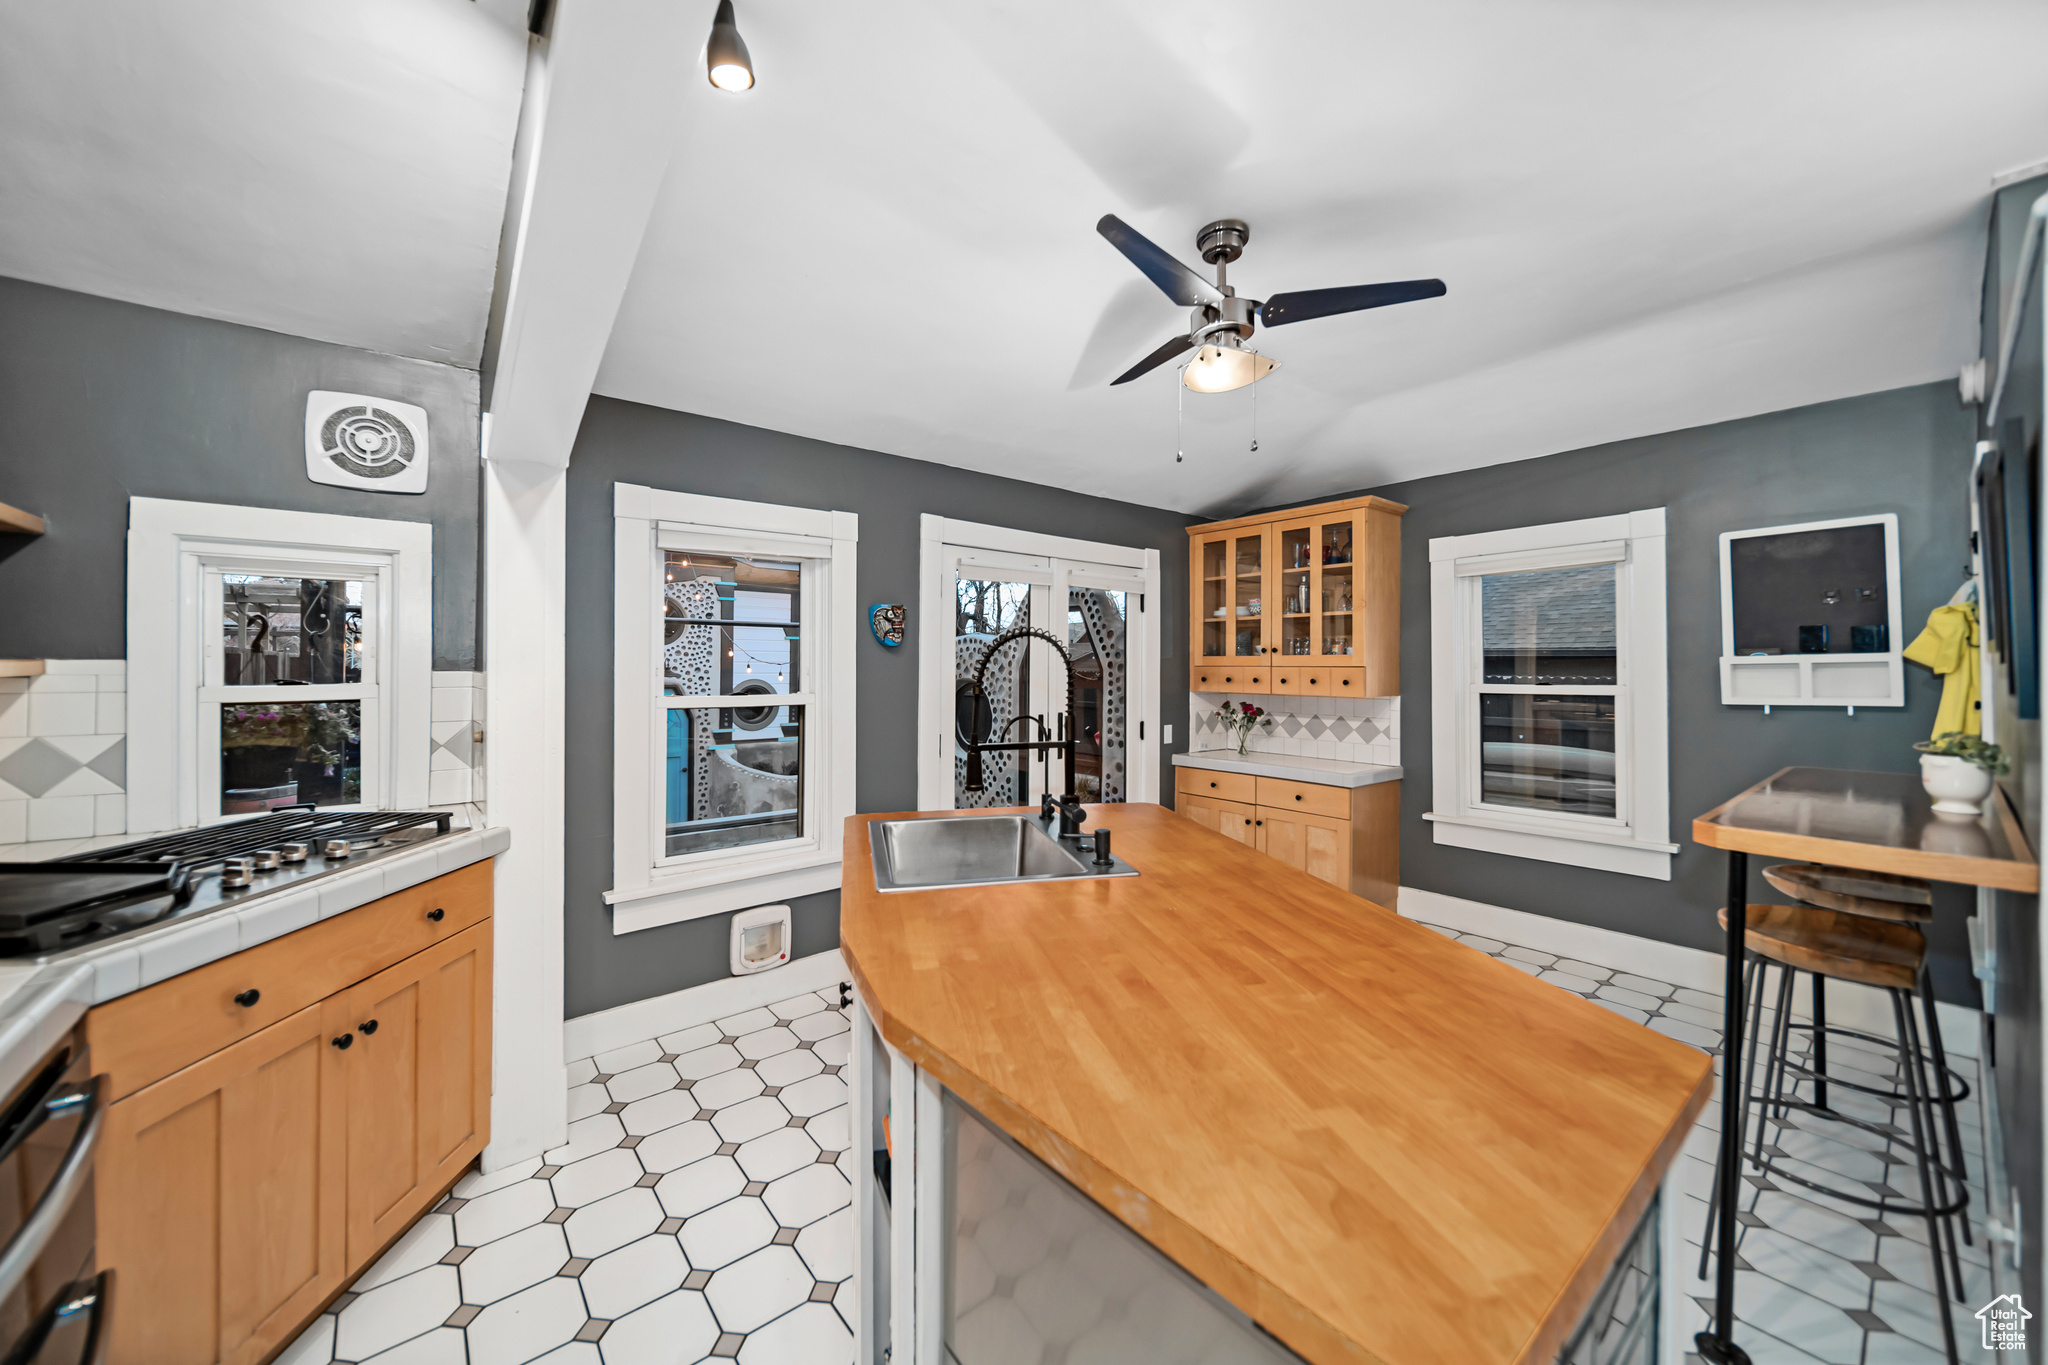 Kitchen with sink, ceiling fan, light tile floors, and tasteful backsplash